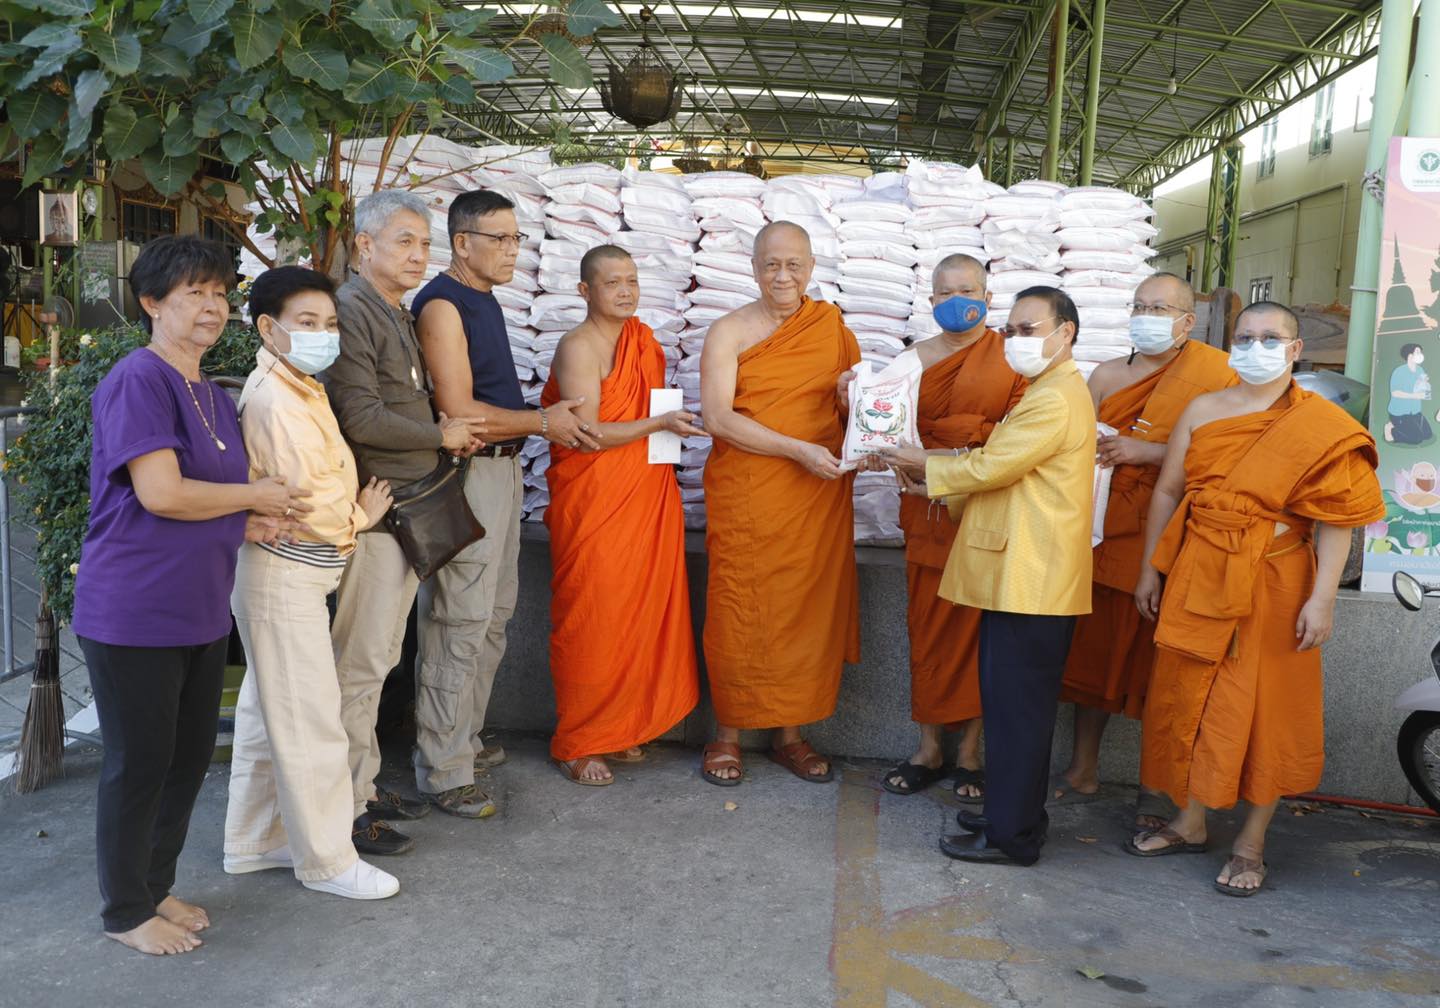 หลวงพ่อสมชาย วัดปริวาสมอบข้าวสาร 500 ถุง เข้าโรงครัว มจร เยียวยาผลกระทบวิกฤติโควิด -19